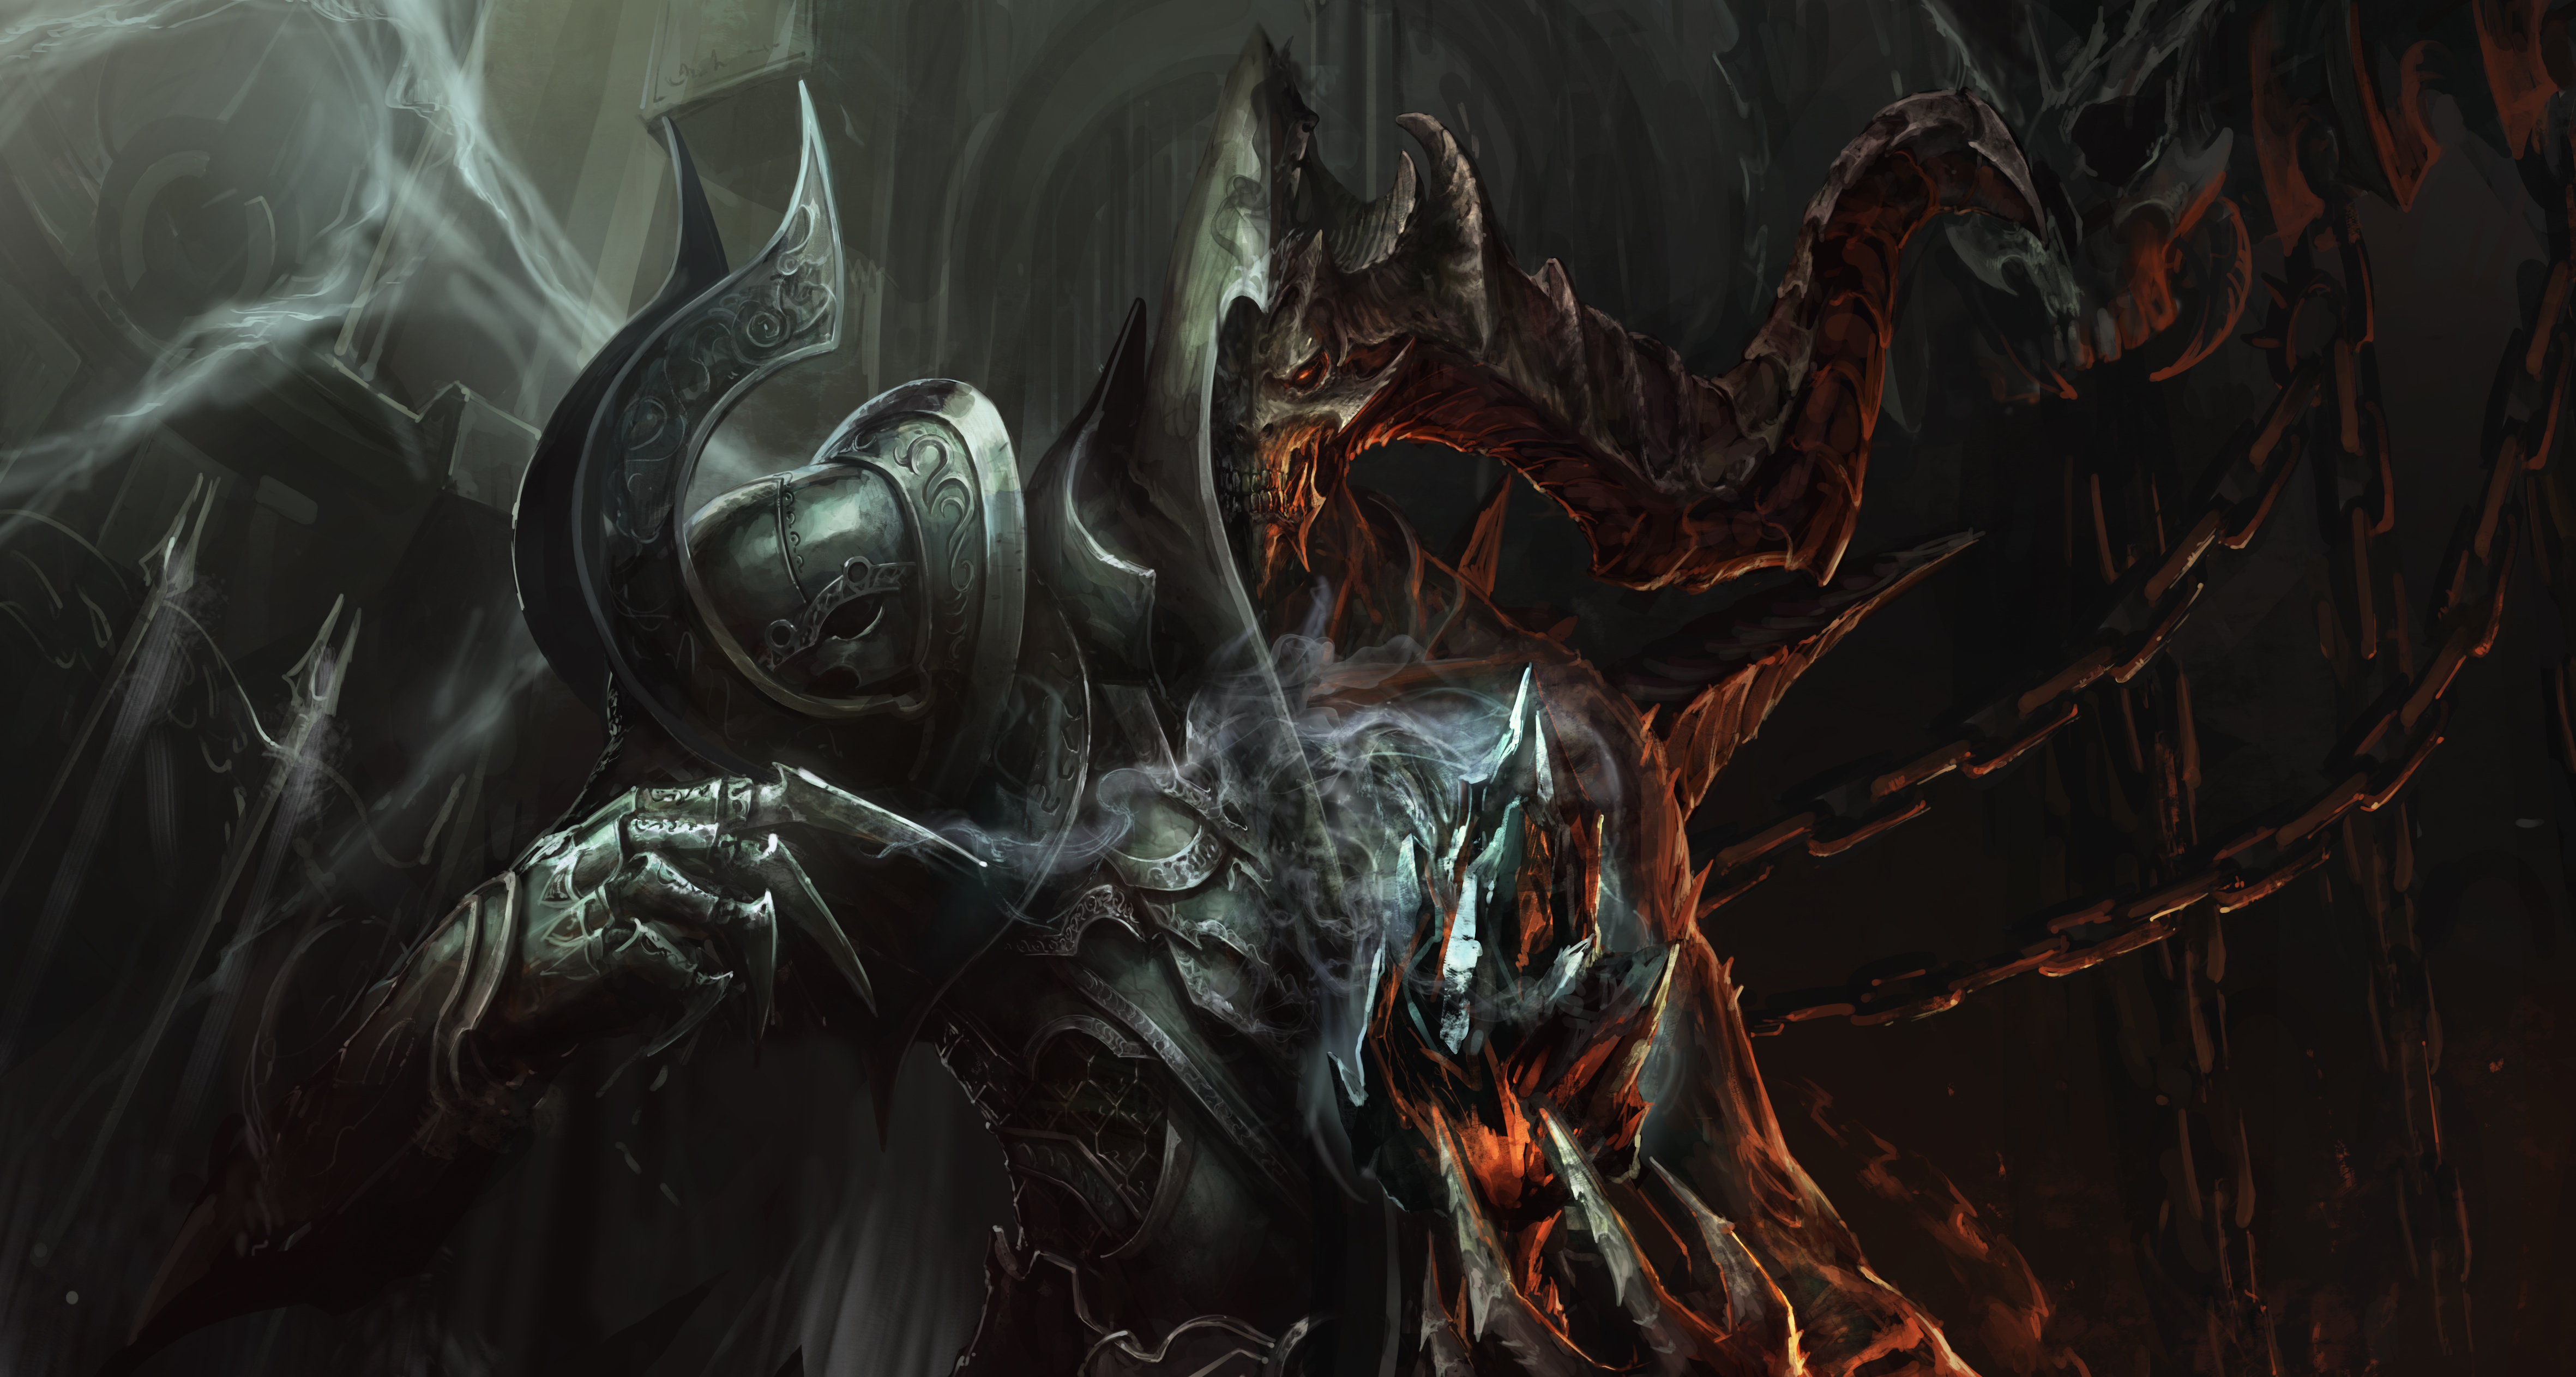 Diablo III: Reaper Of Souls 4k Ultra HD Wallpaper by Lee Geun Ill